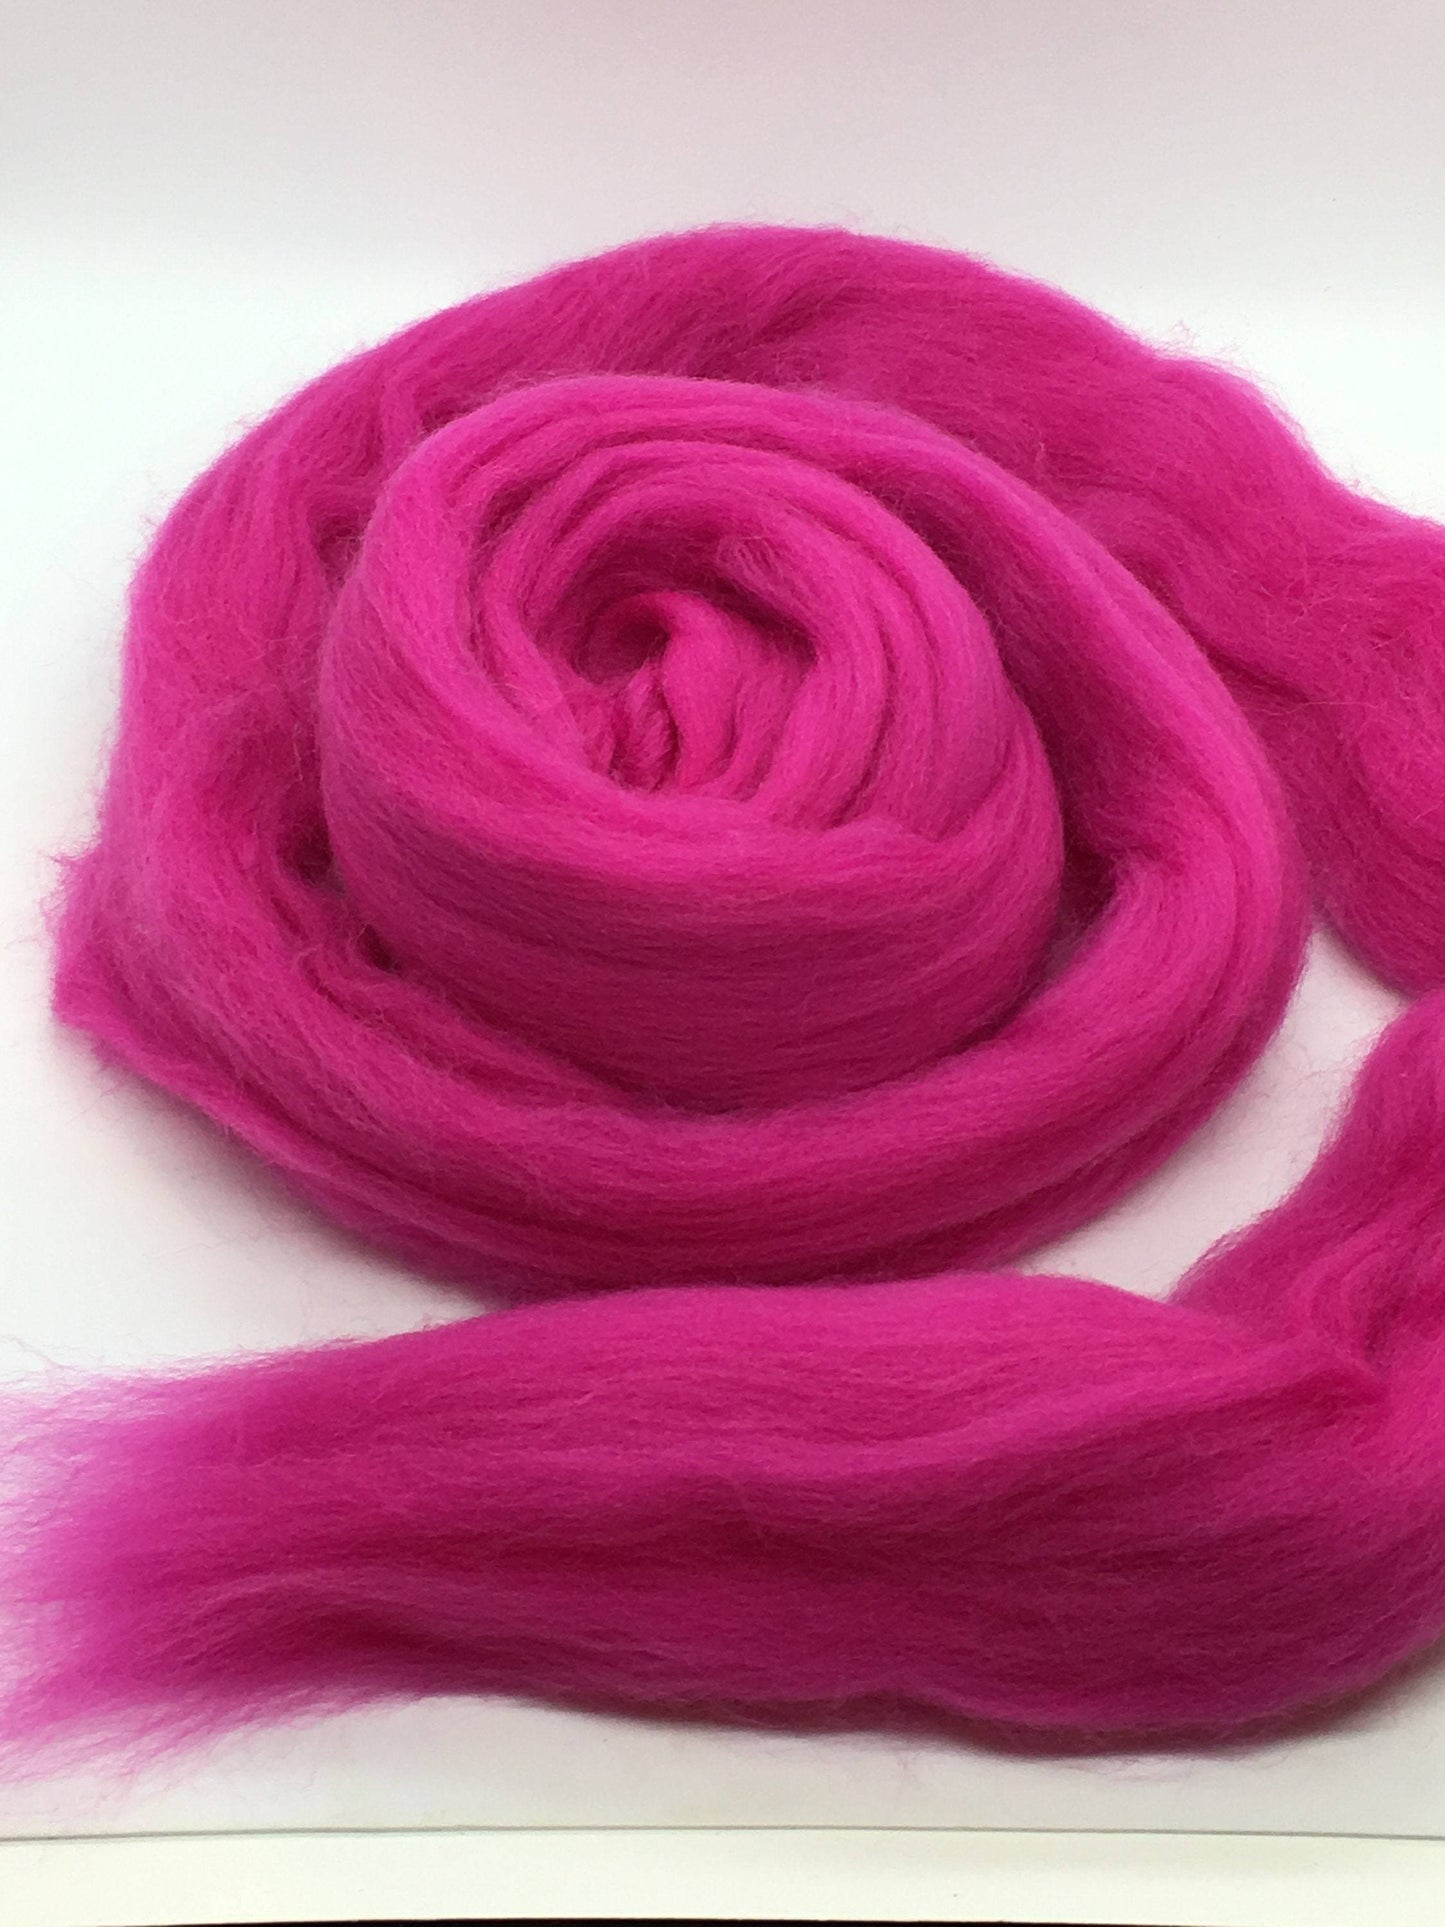 Hot Pink Wool Merino Top Roving - Spin into Yarn, Needle Felt, Wet Felt, Spinning, Felting, Weaving, Knitting, all Crafts